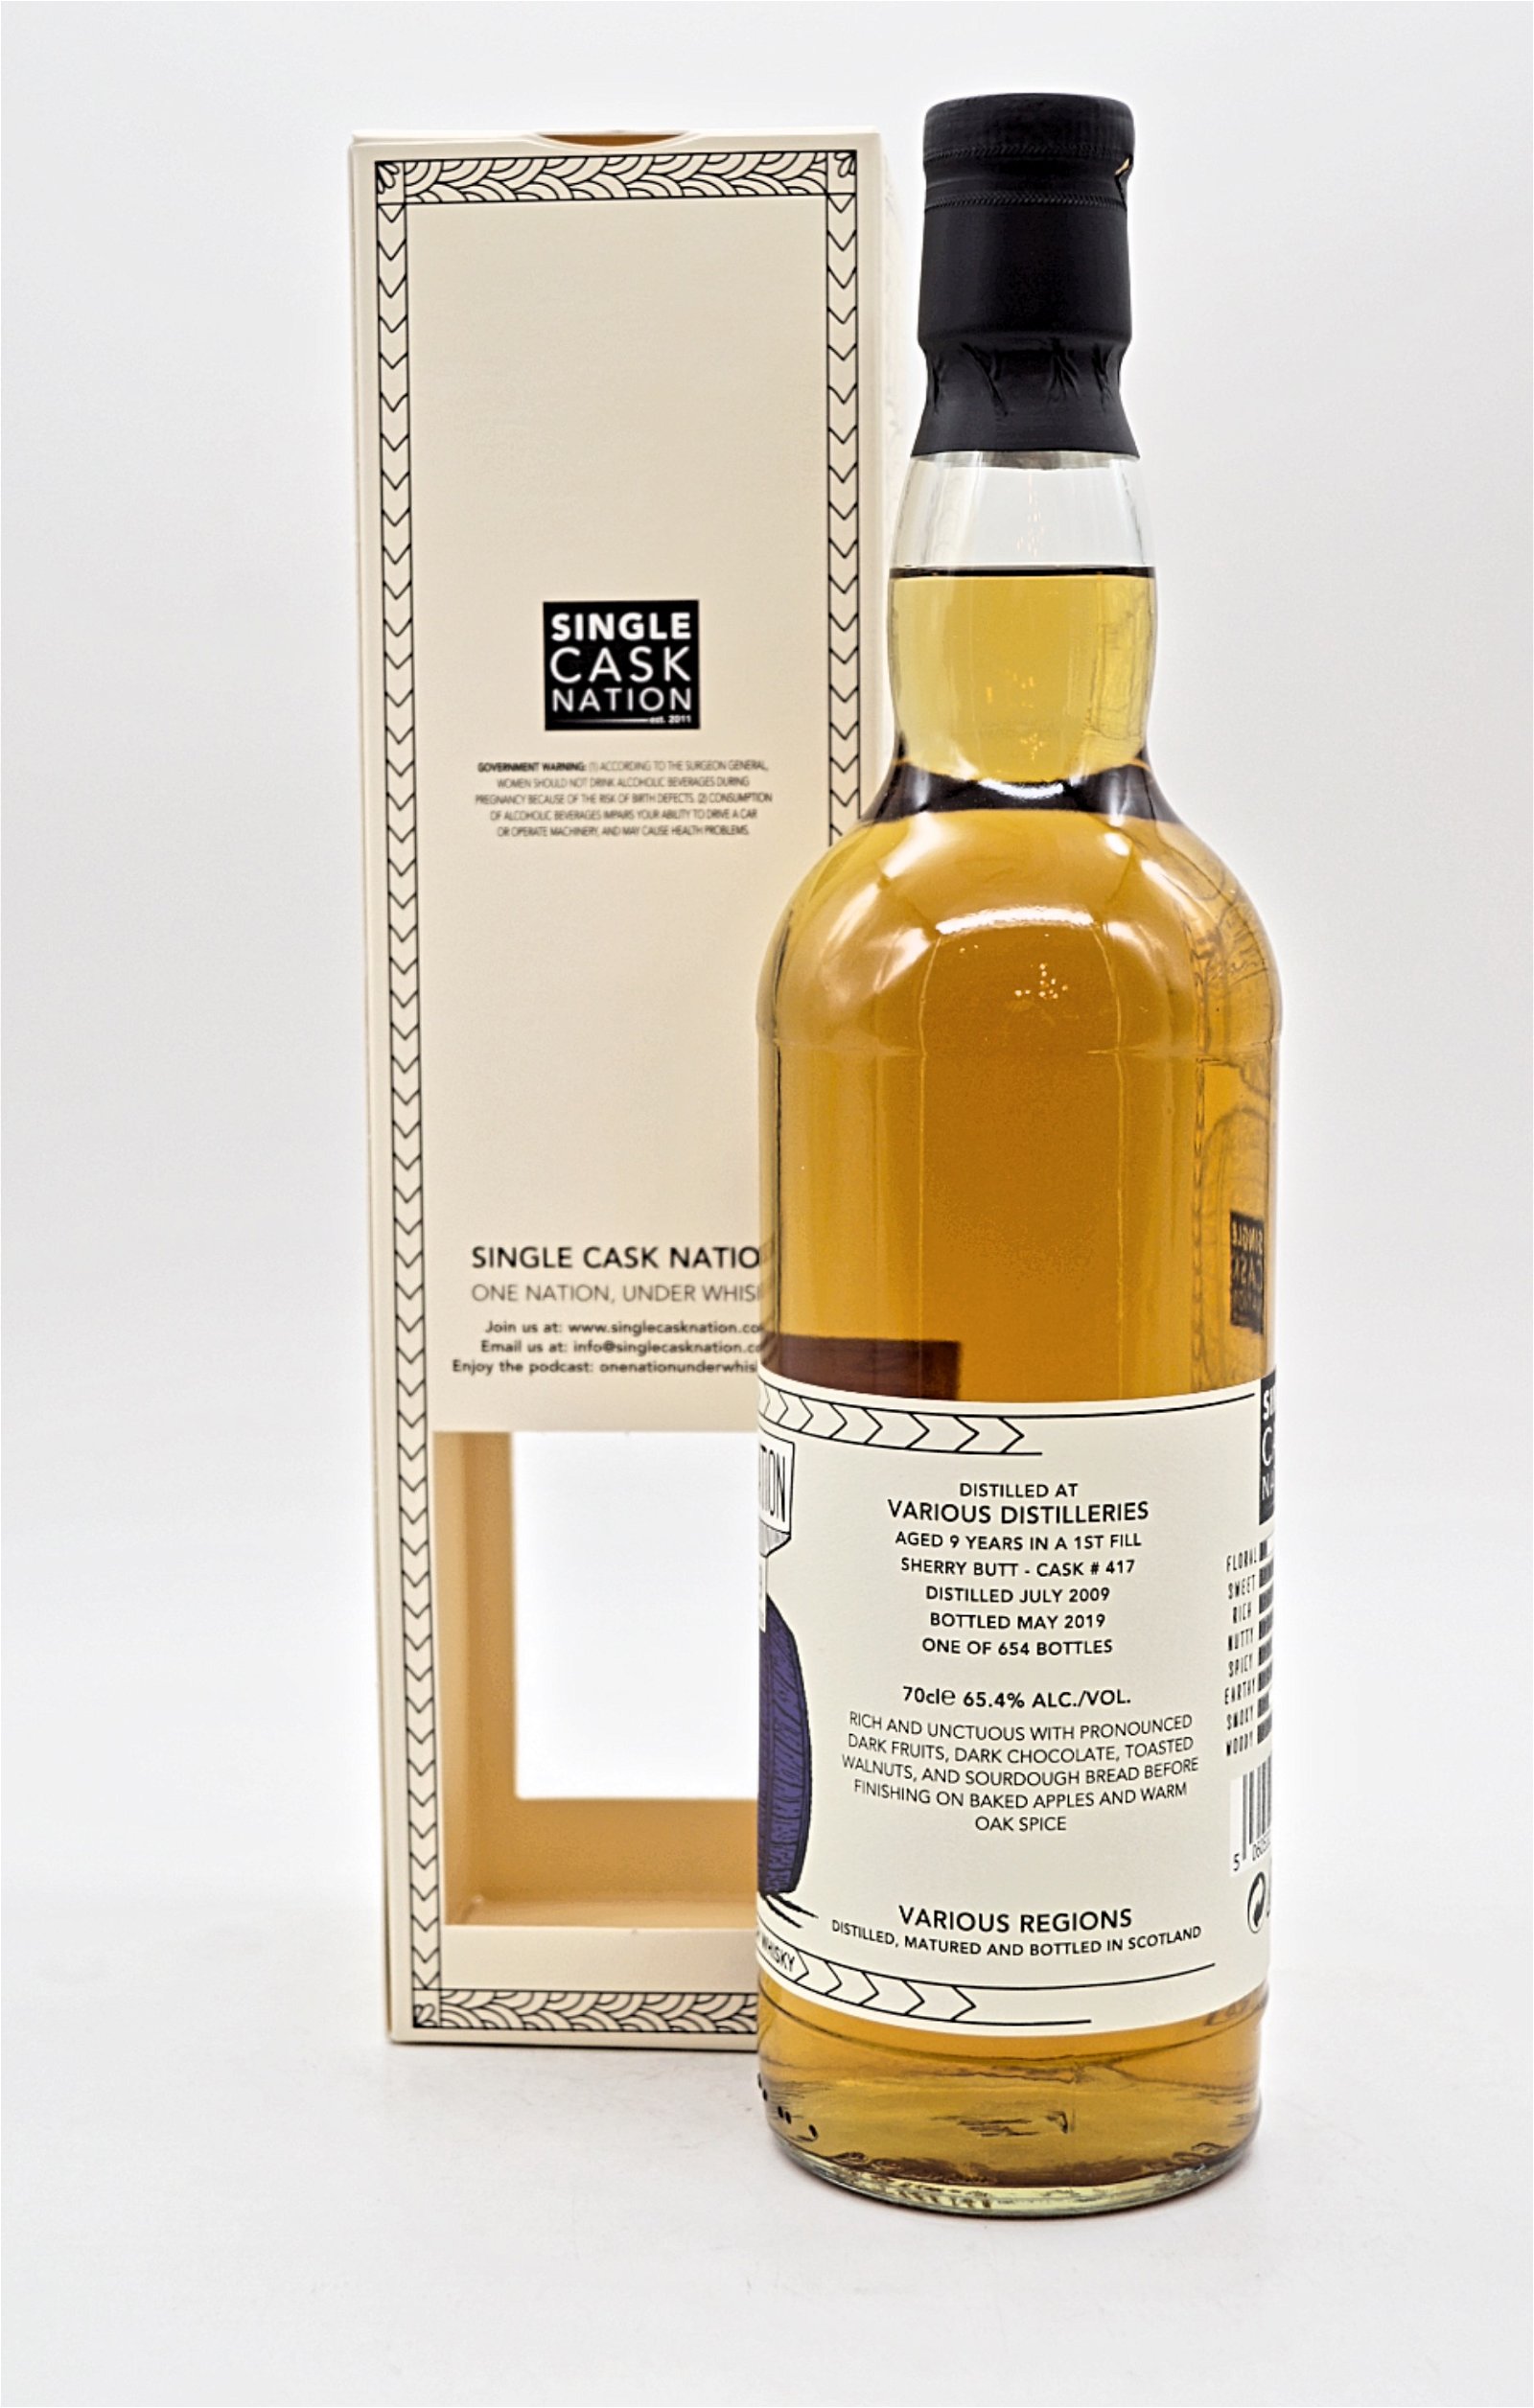 Single Cask Nation 9 Jahre Blended Malt Cask #417 Scotch Whisky